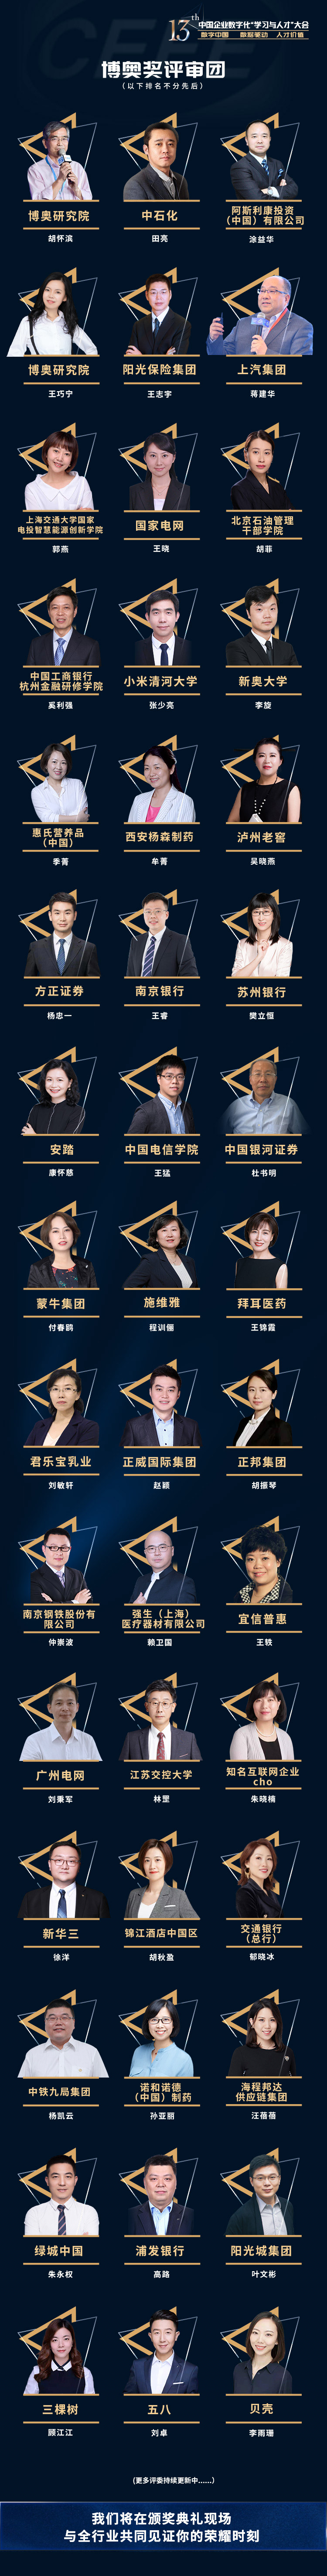 2021第13届中国企业数字化“学习与人才”大会（CEFE)_门票优惠_活动家官网报名